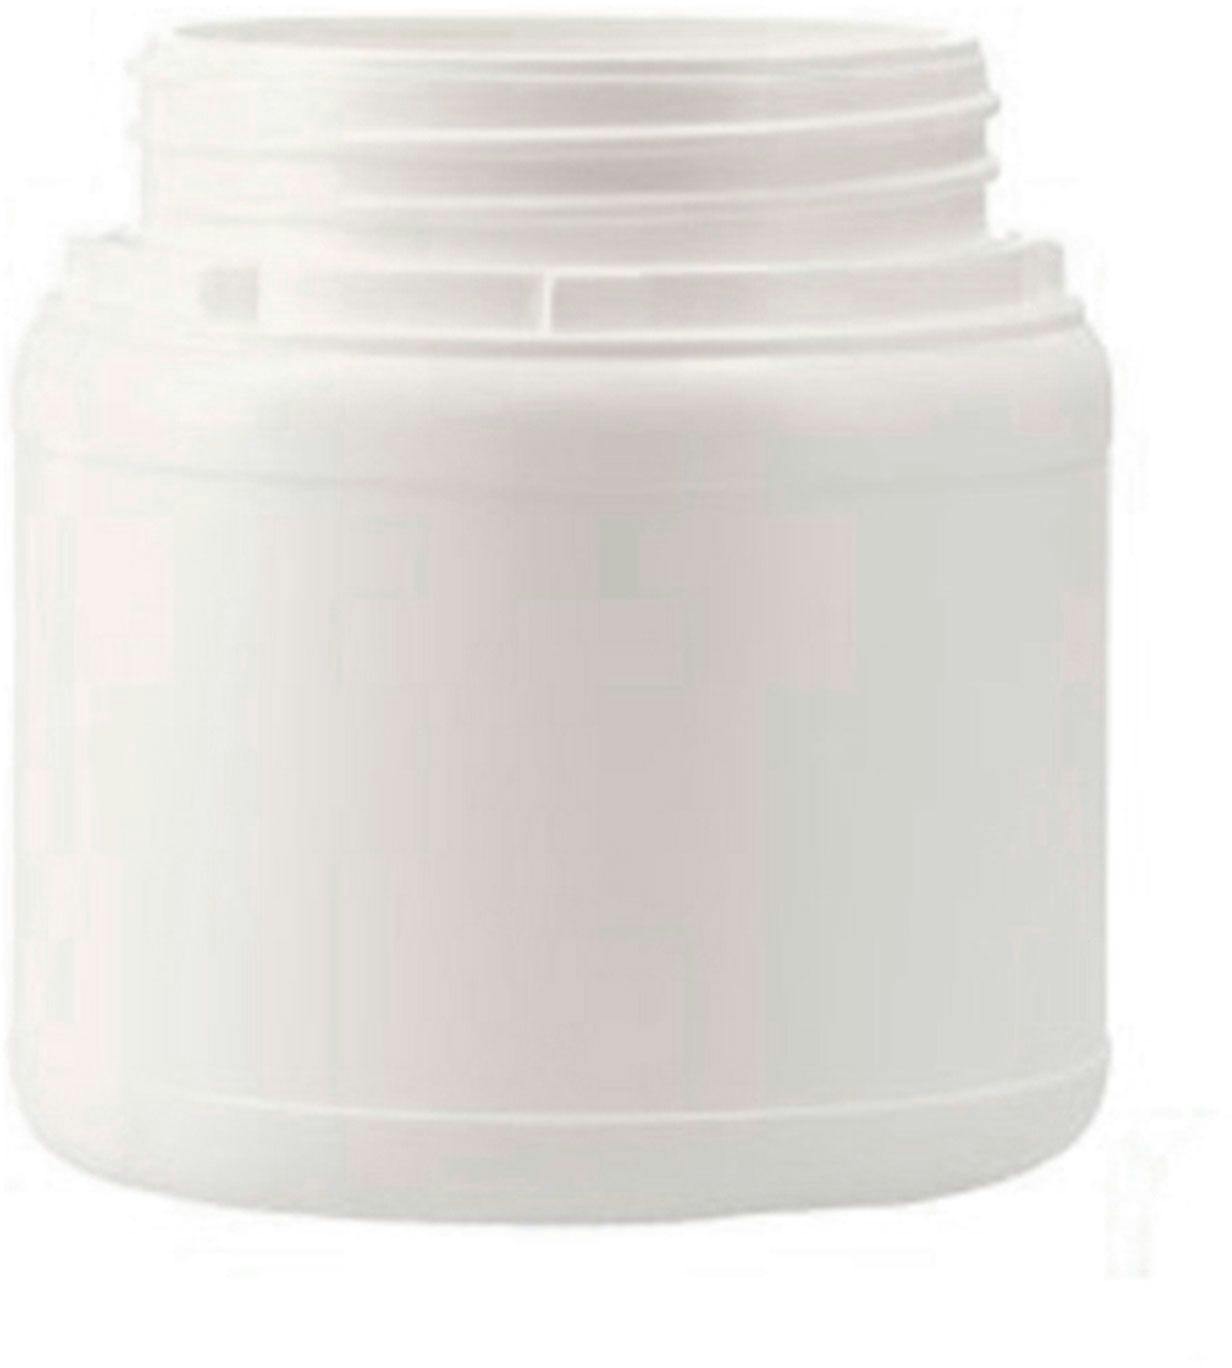 Jar HDPE 500 ml white  Precinto D80